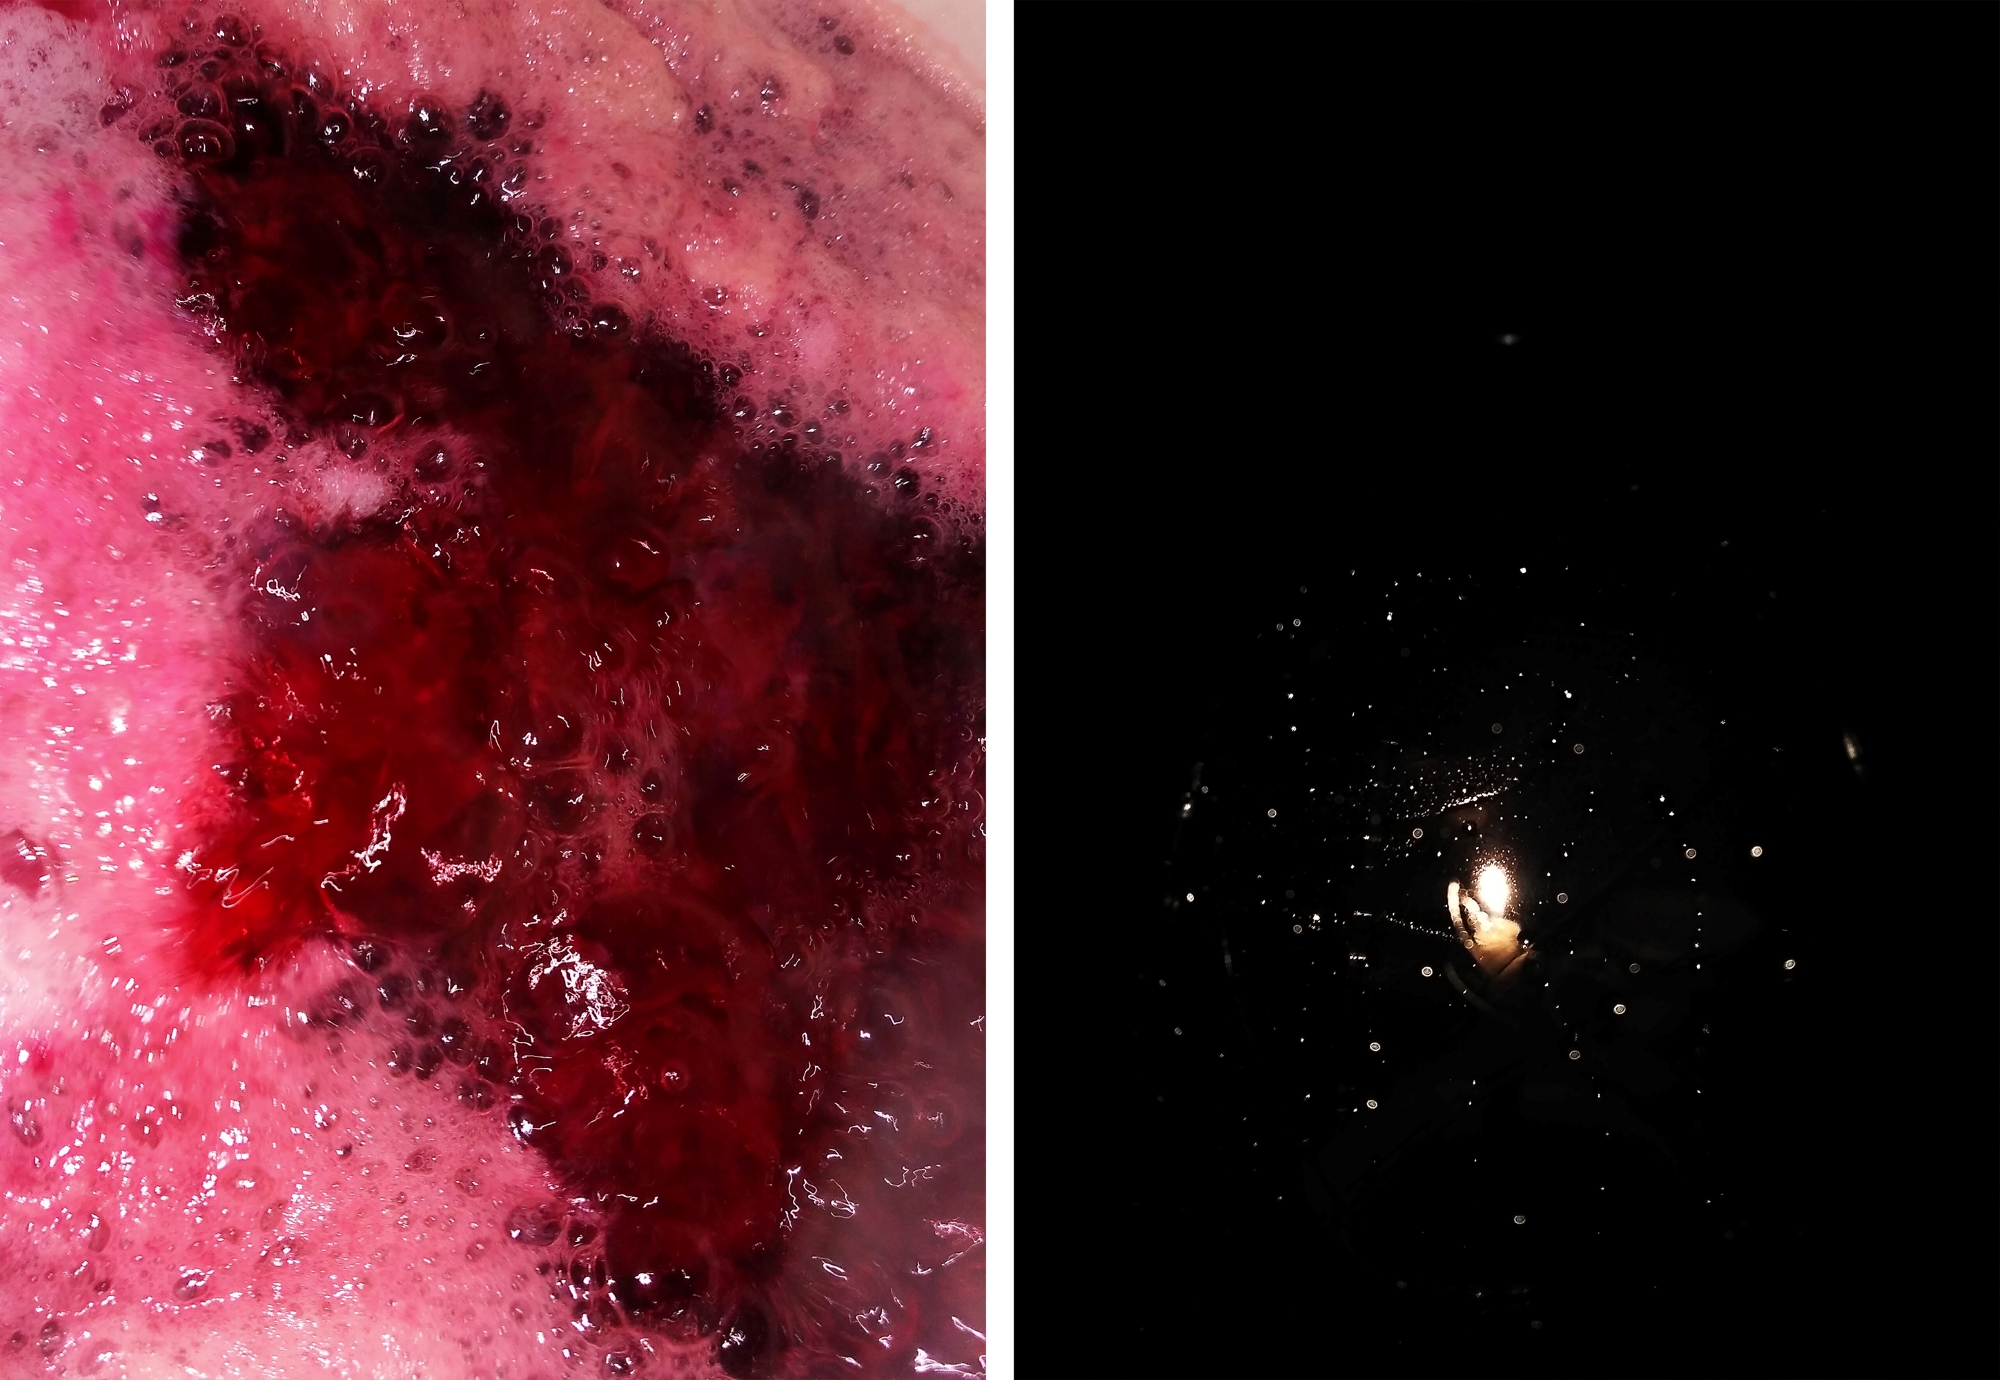 Obraz podzielony na dwie części: z lewej skrzep krwi na skórze, z prawej - lampa świecąca w ciemności.